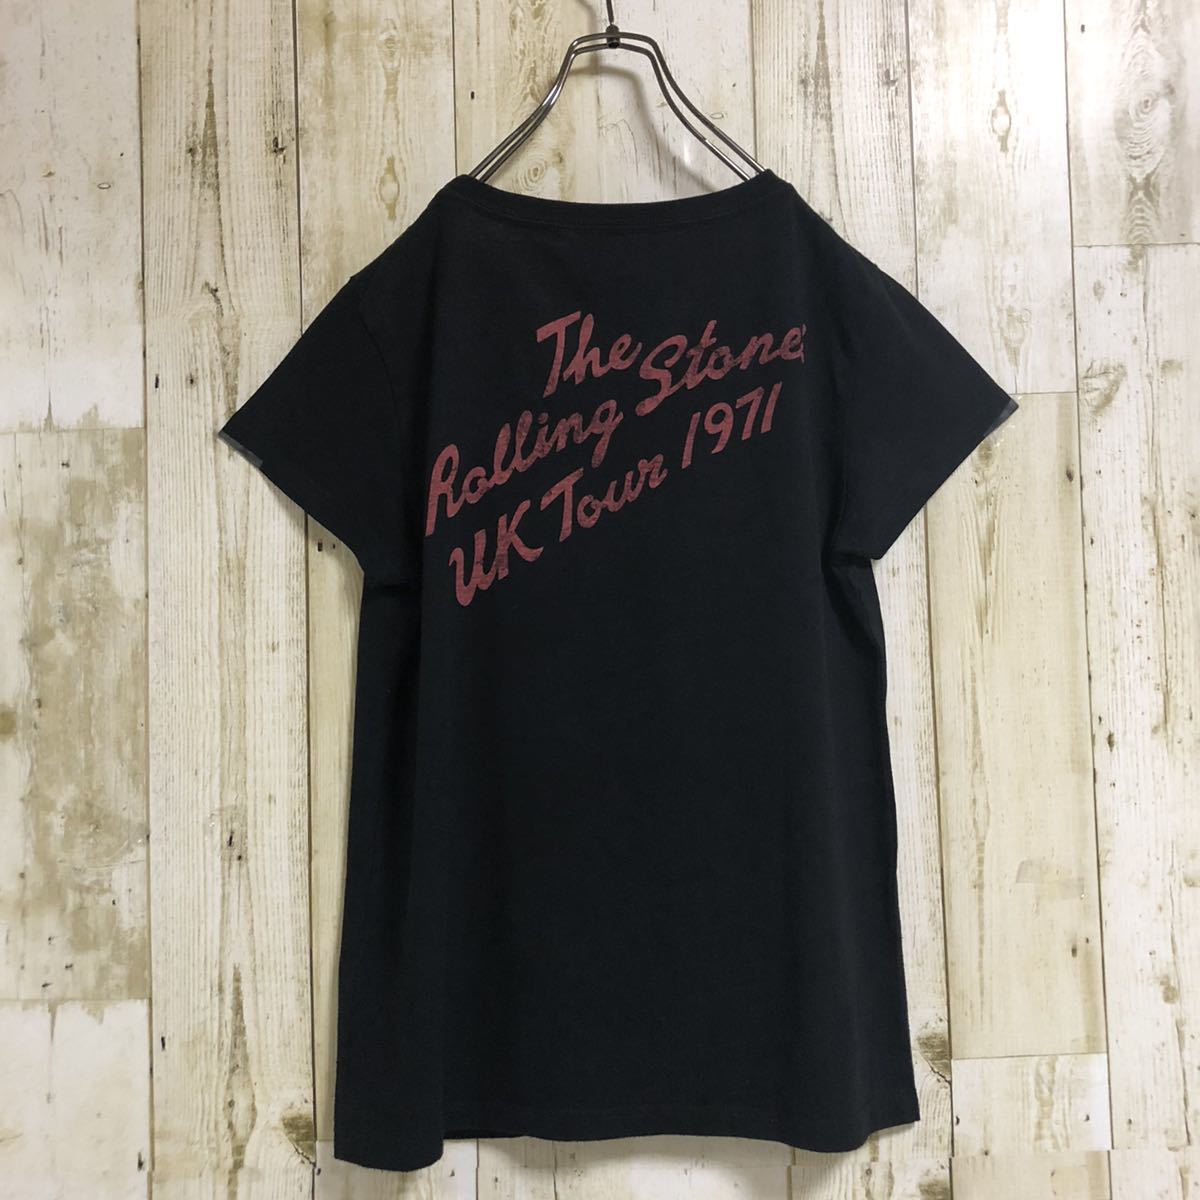 【激レア】ザ・ローリングストーンズ The Rolling Storns UK Tour 1971 ビッグロゴ 両面プリント メタル バンドTシャツ 半袖Tシャツ L 古着_画像3